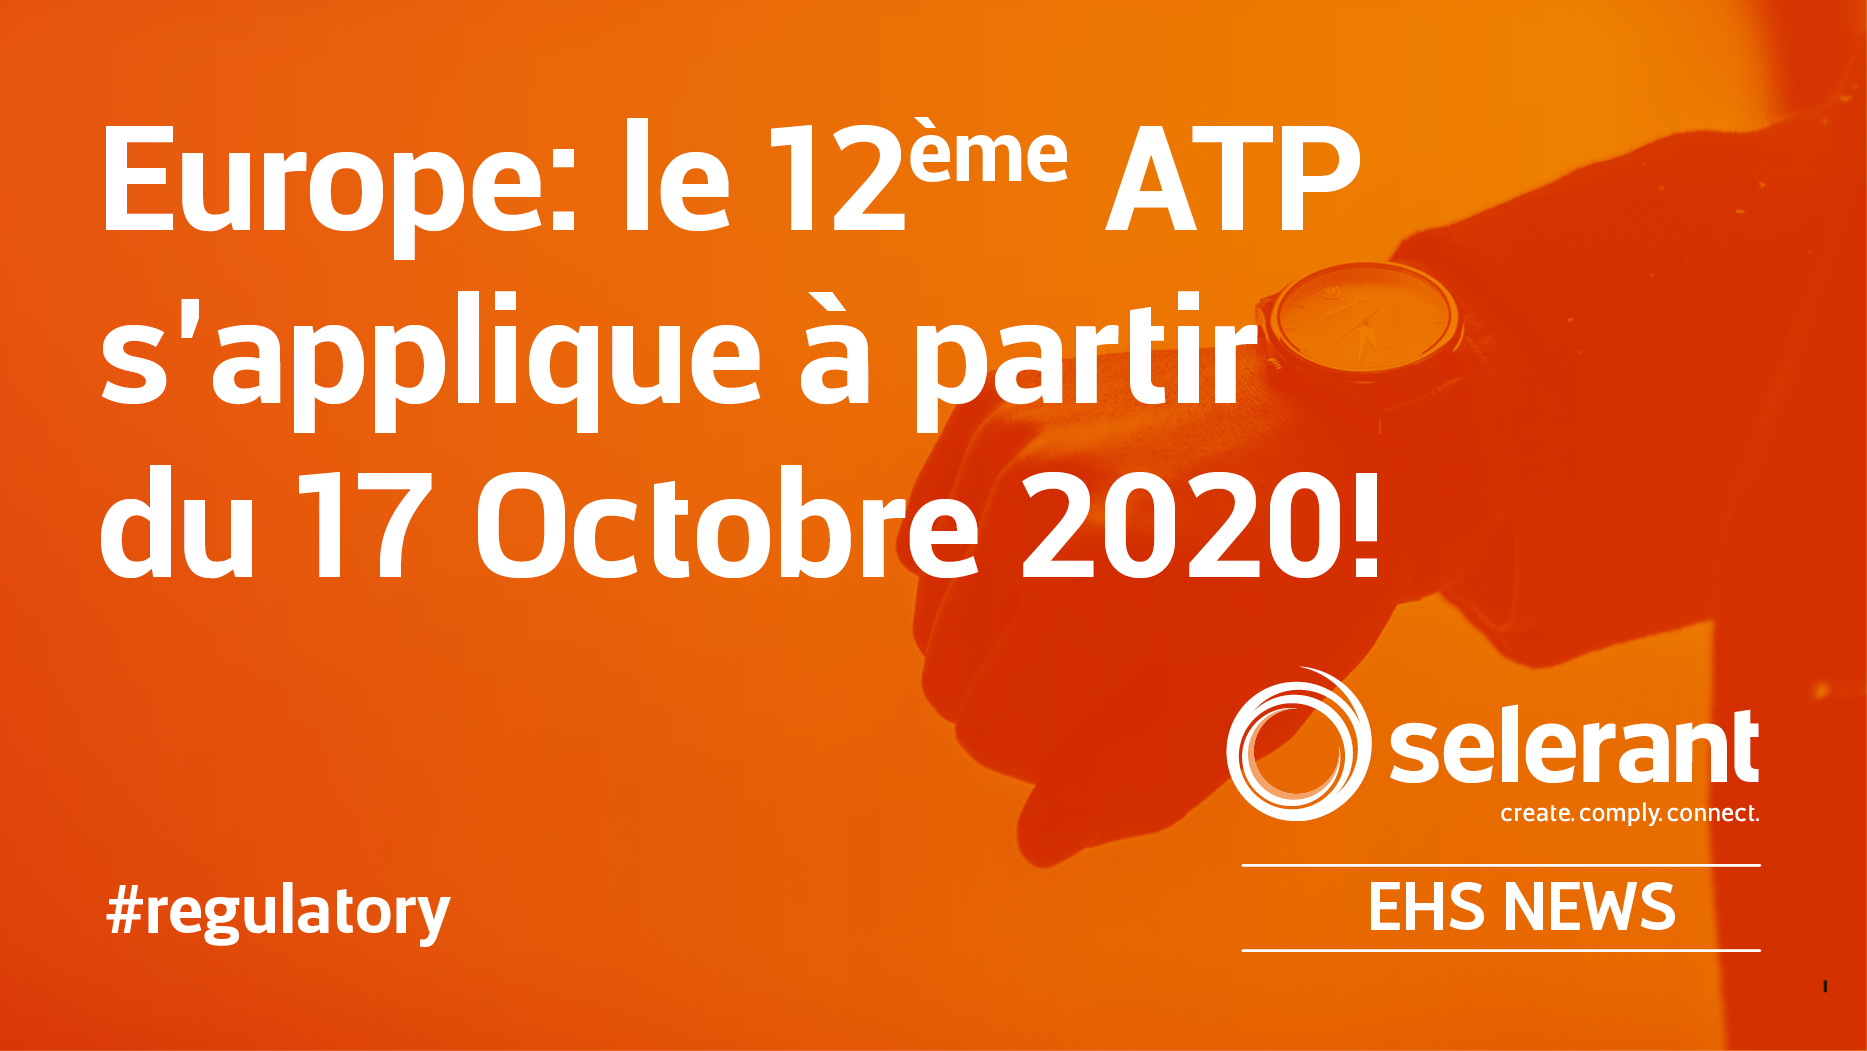 Europe: le 12ème ATP s’applique à partir du 17 Octobre 2020!